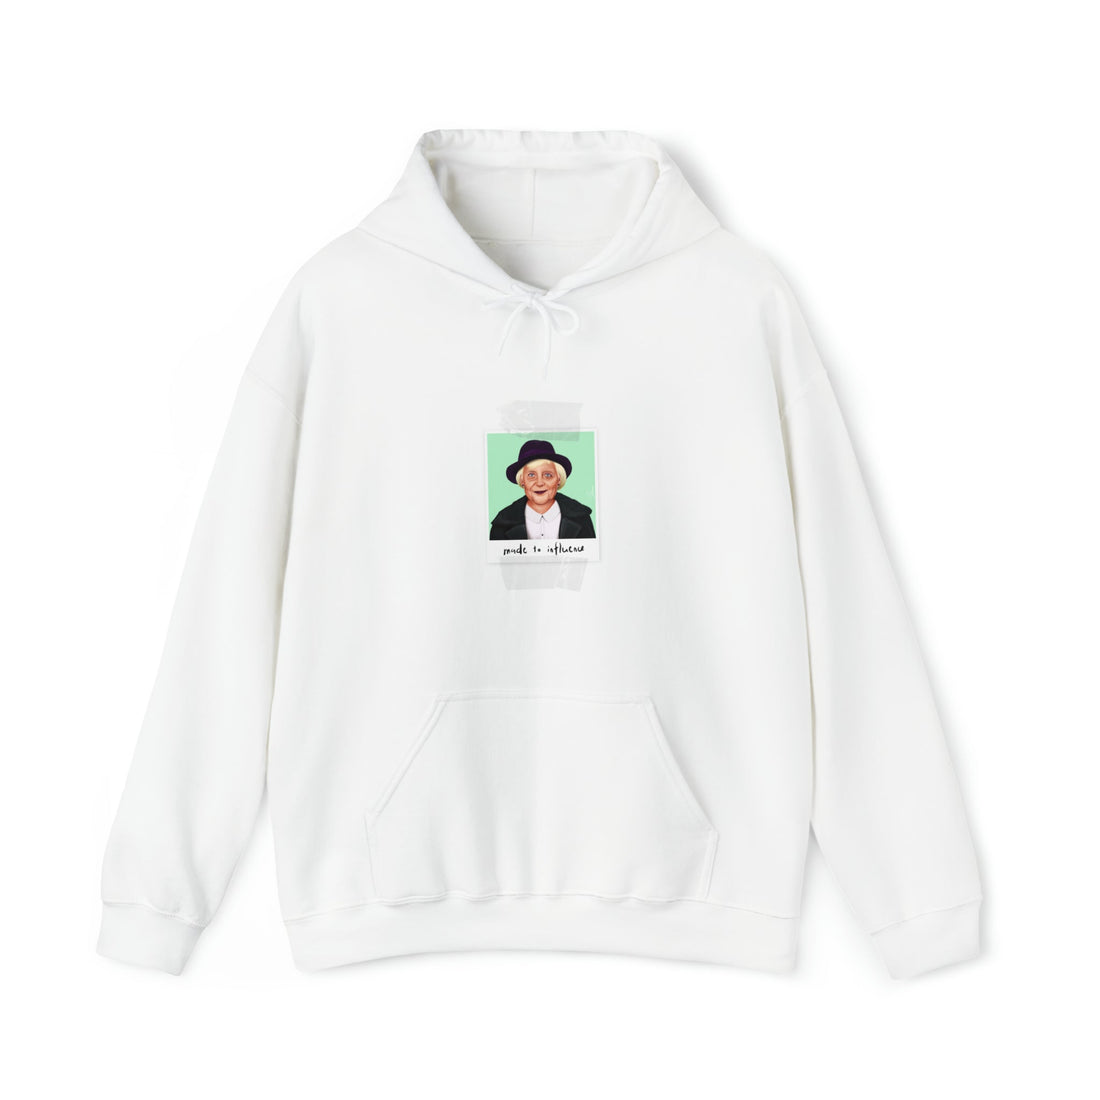 Angela Merkel Hipstory Hooded Sweatshirt - Hipstory Shop